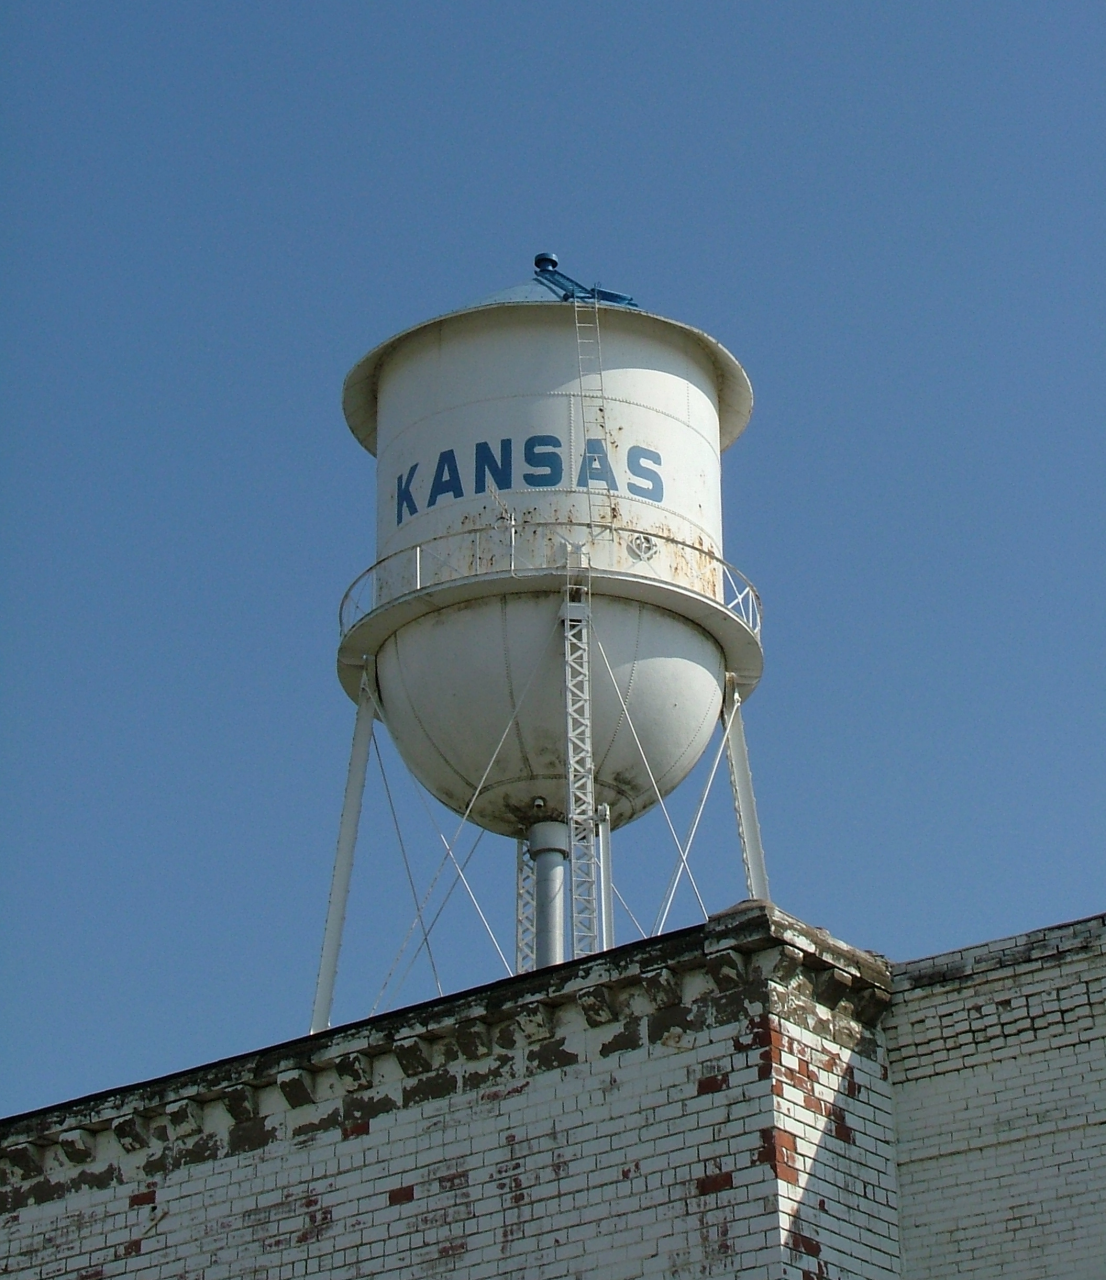 Kansas, Illinois